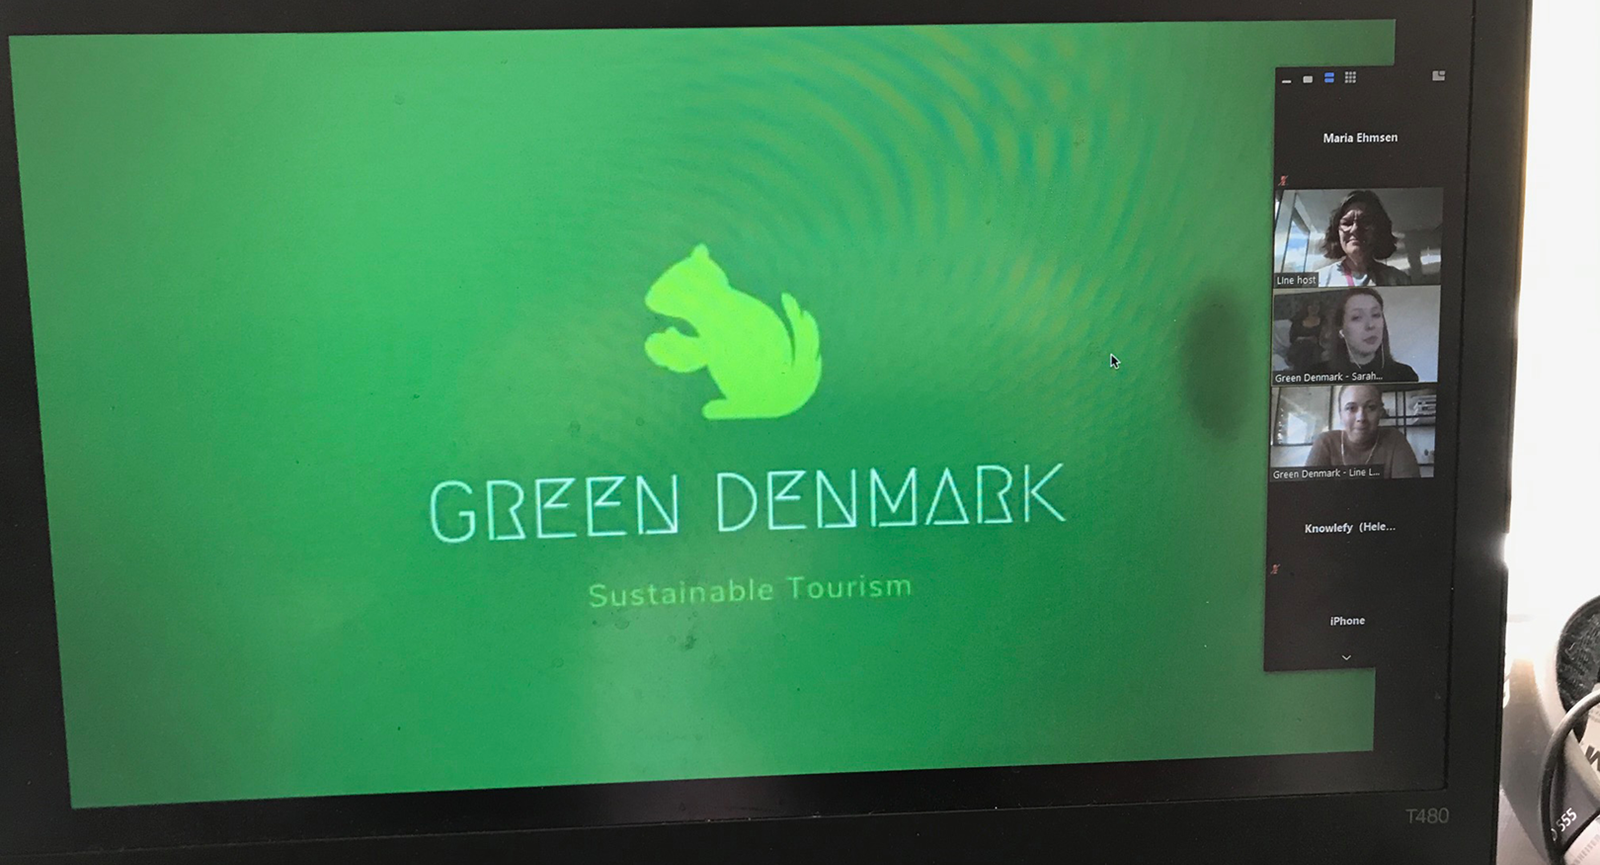 Nærbillede af en computerskærm med grøn baggrundsfarve og et motiv af et lysegrønt egern og påskriften 'Green Denmark'.